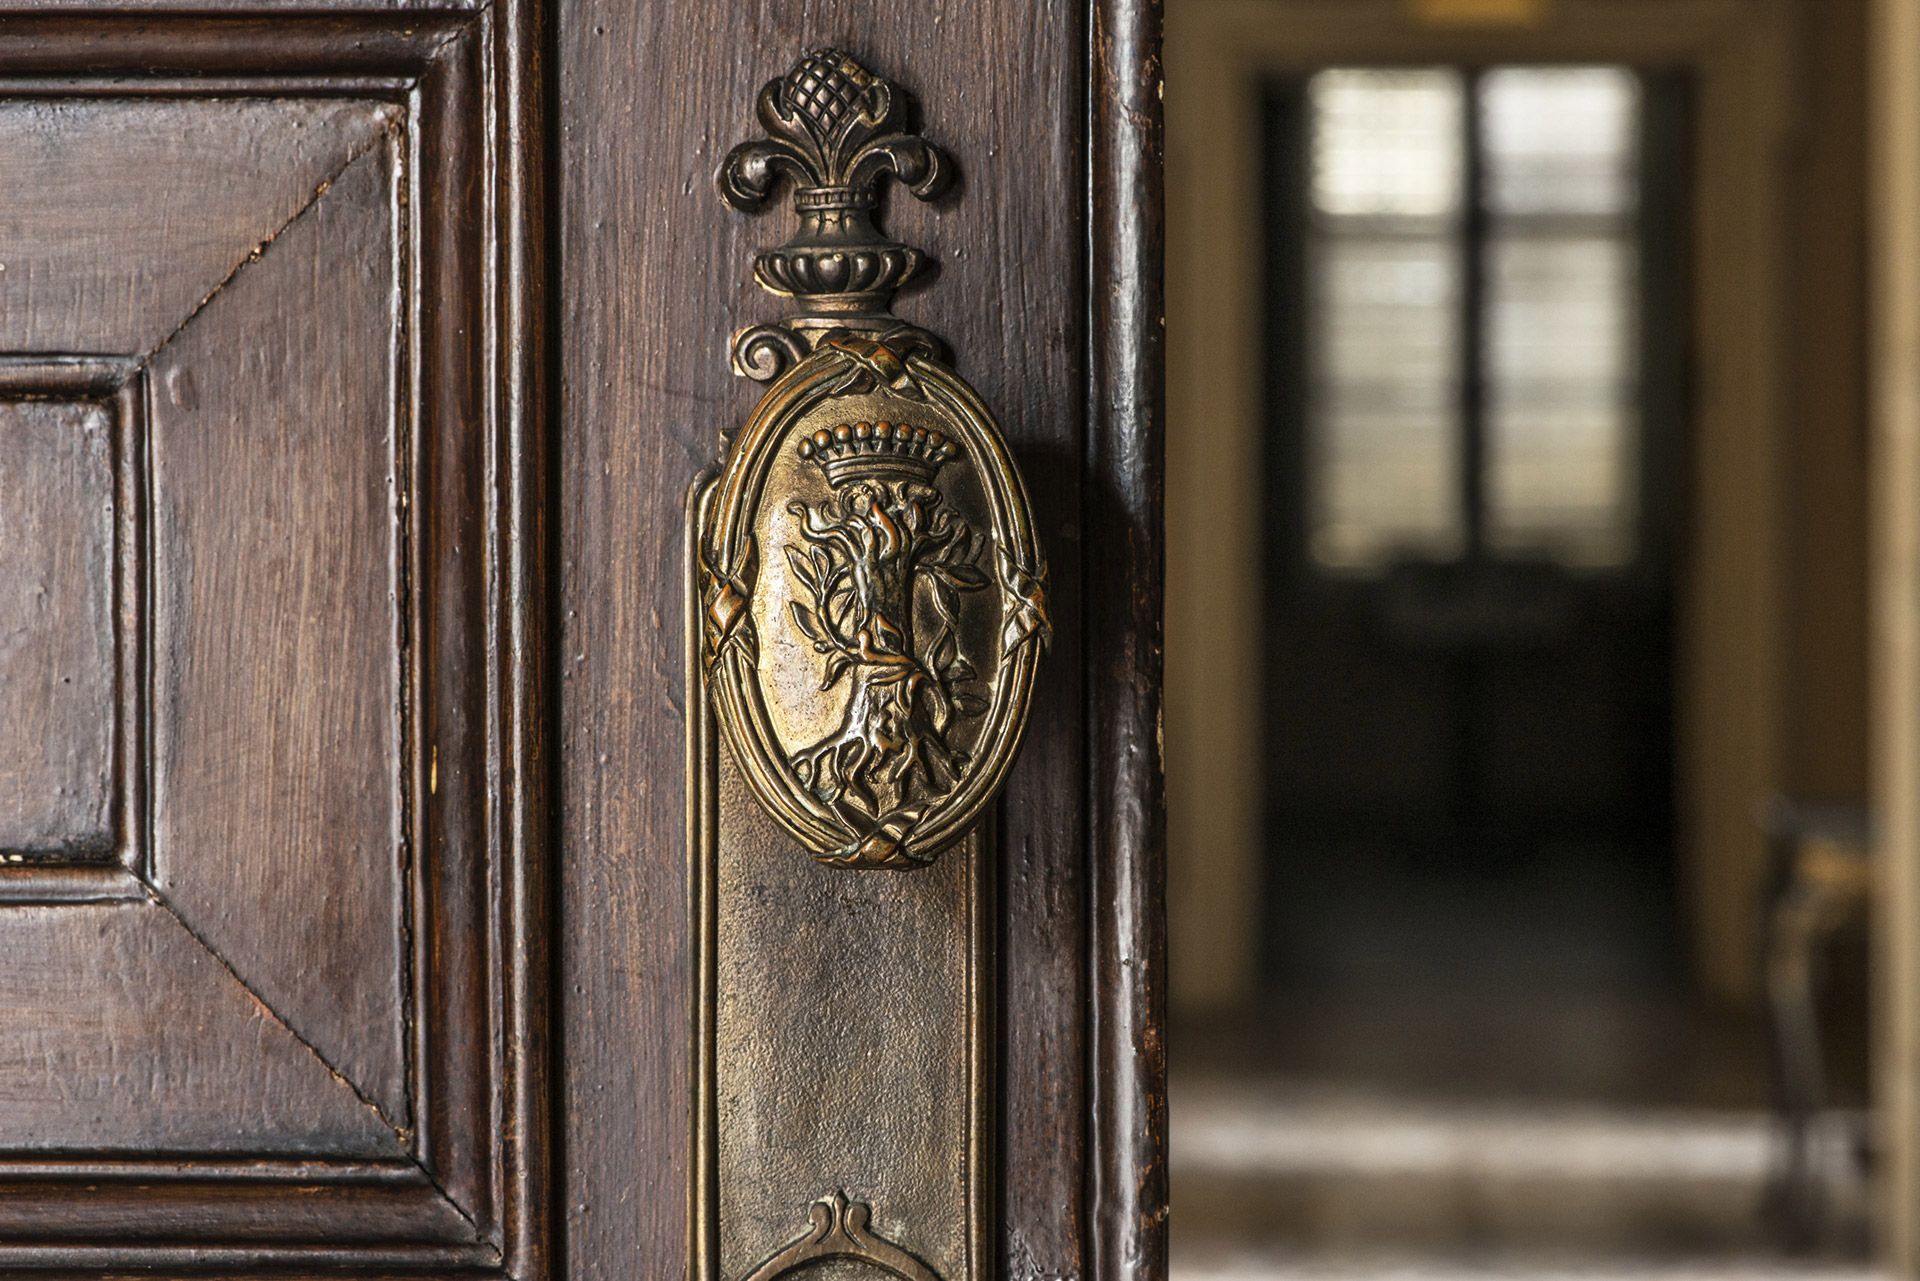 Miniscalchi coat of arms - detail of a doorknob